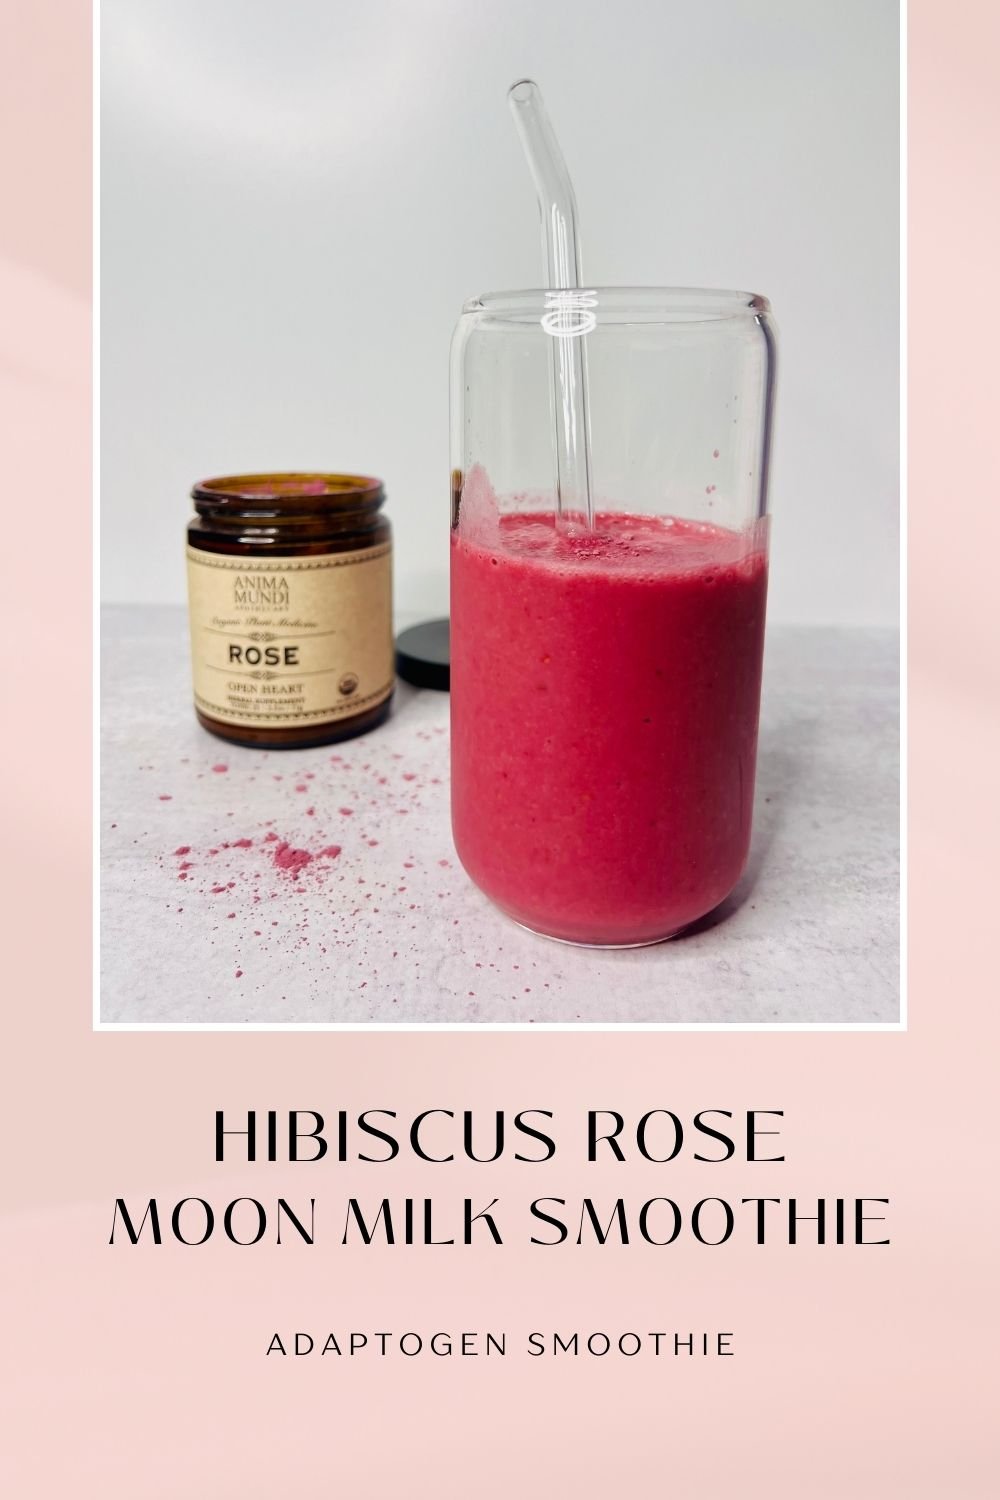 Hibiscus rose latte